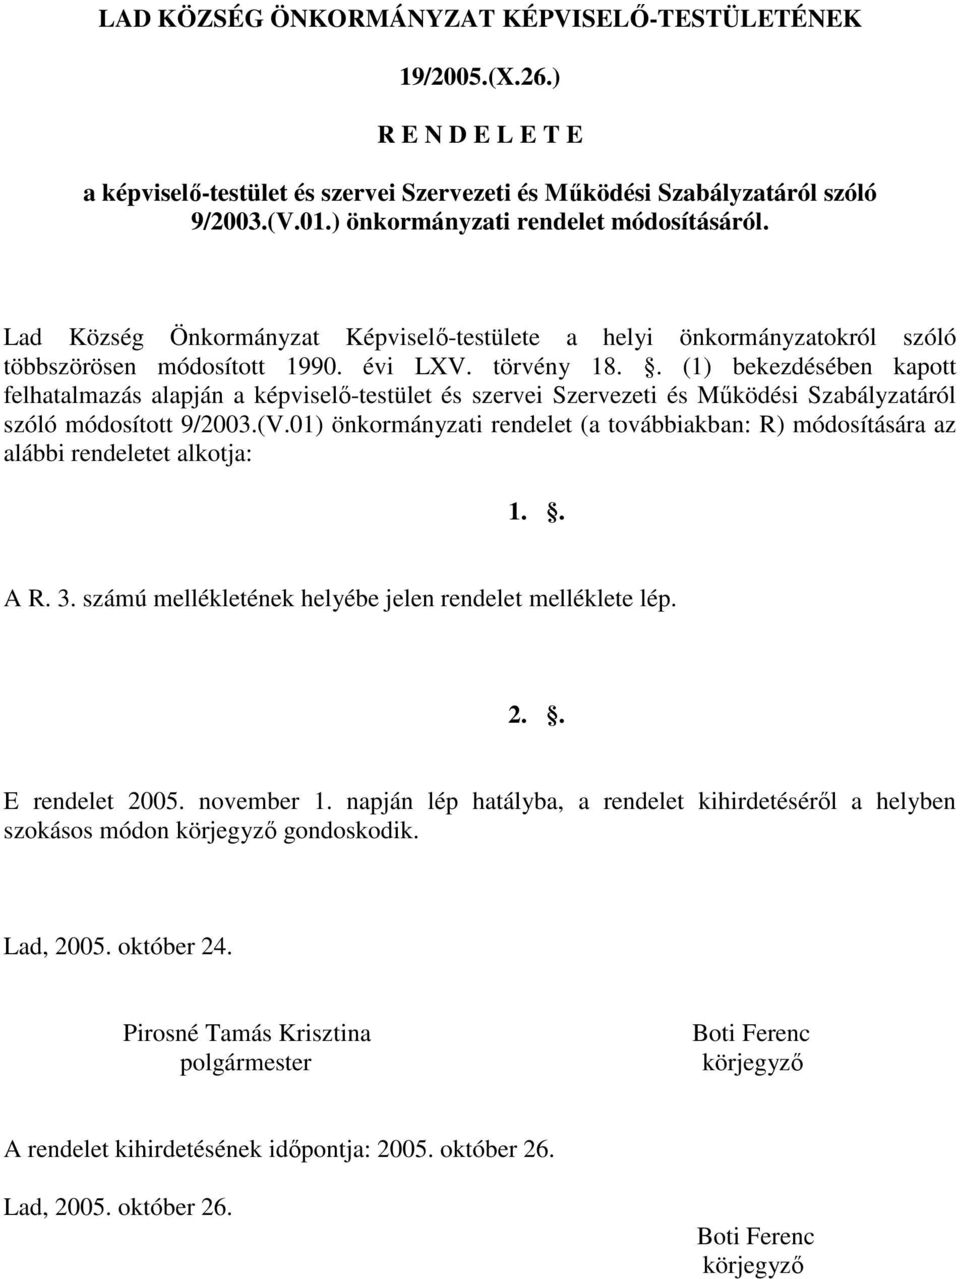 . (1) bekezdésében kapott felhatalmazás alapján a képviselı-testület és szervei Szervezeti és Mőködési Szabályzatáról szóló módosított 9/2003.(V.